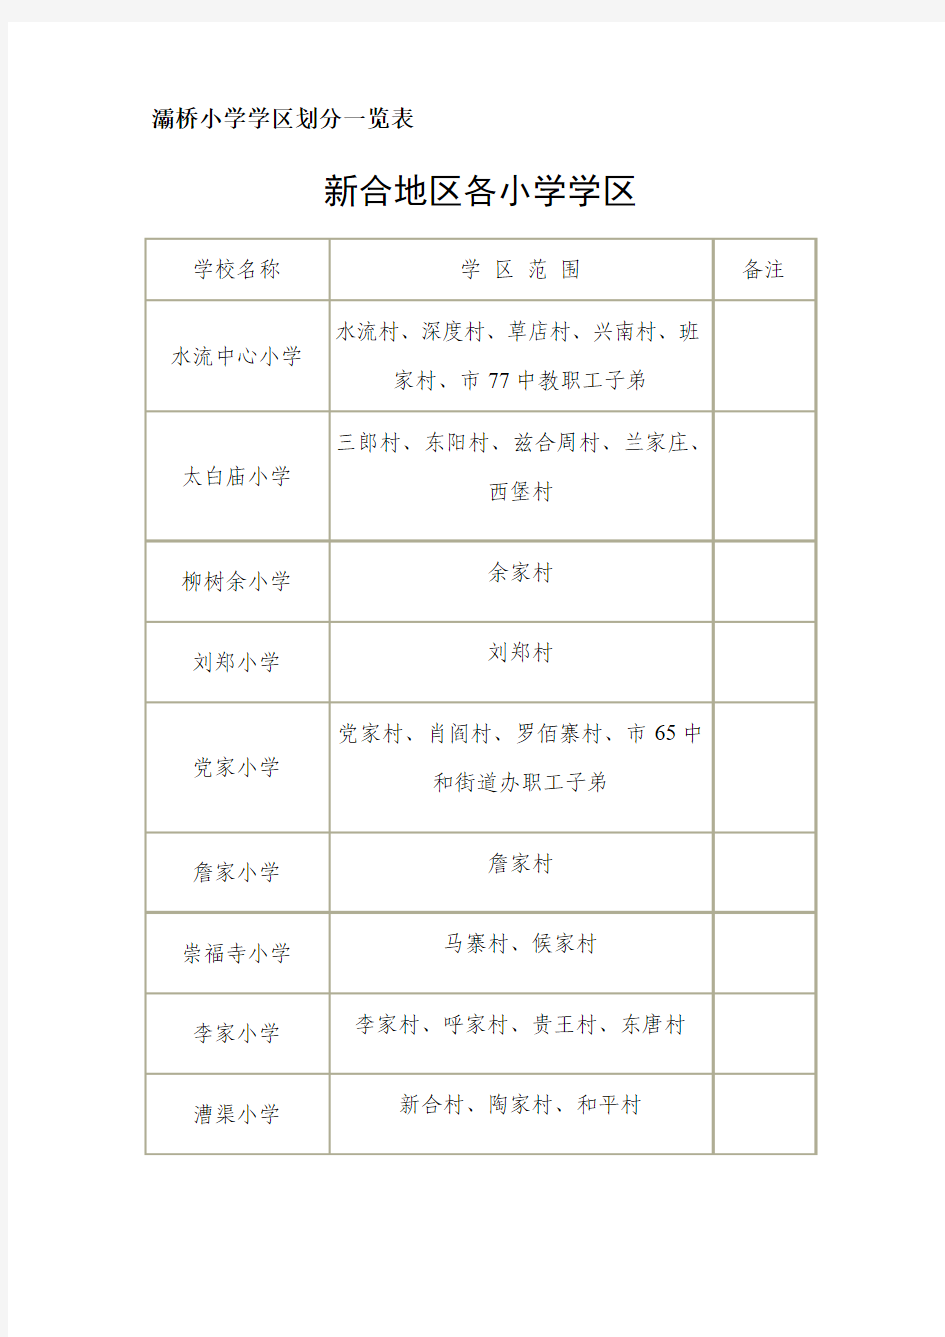 西安灞桥小学学区划分一览表